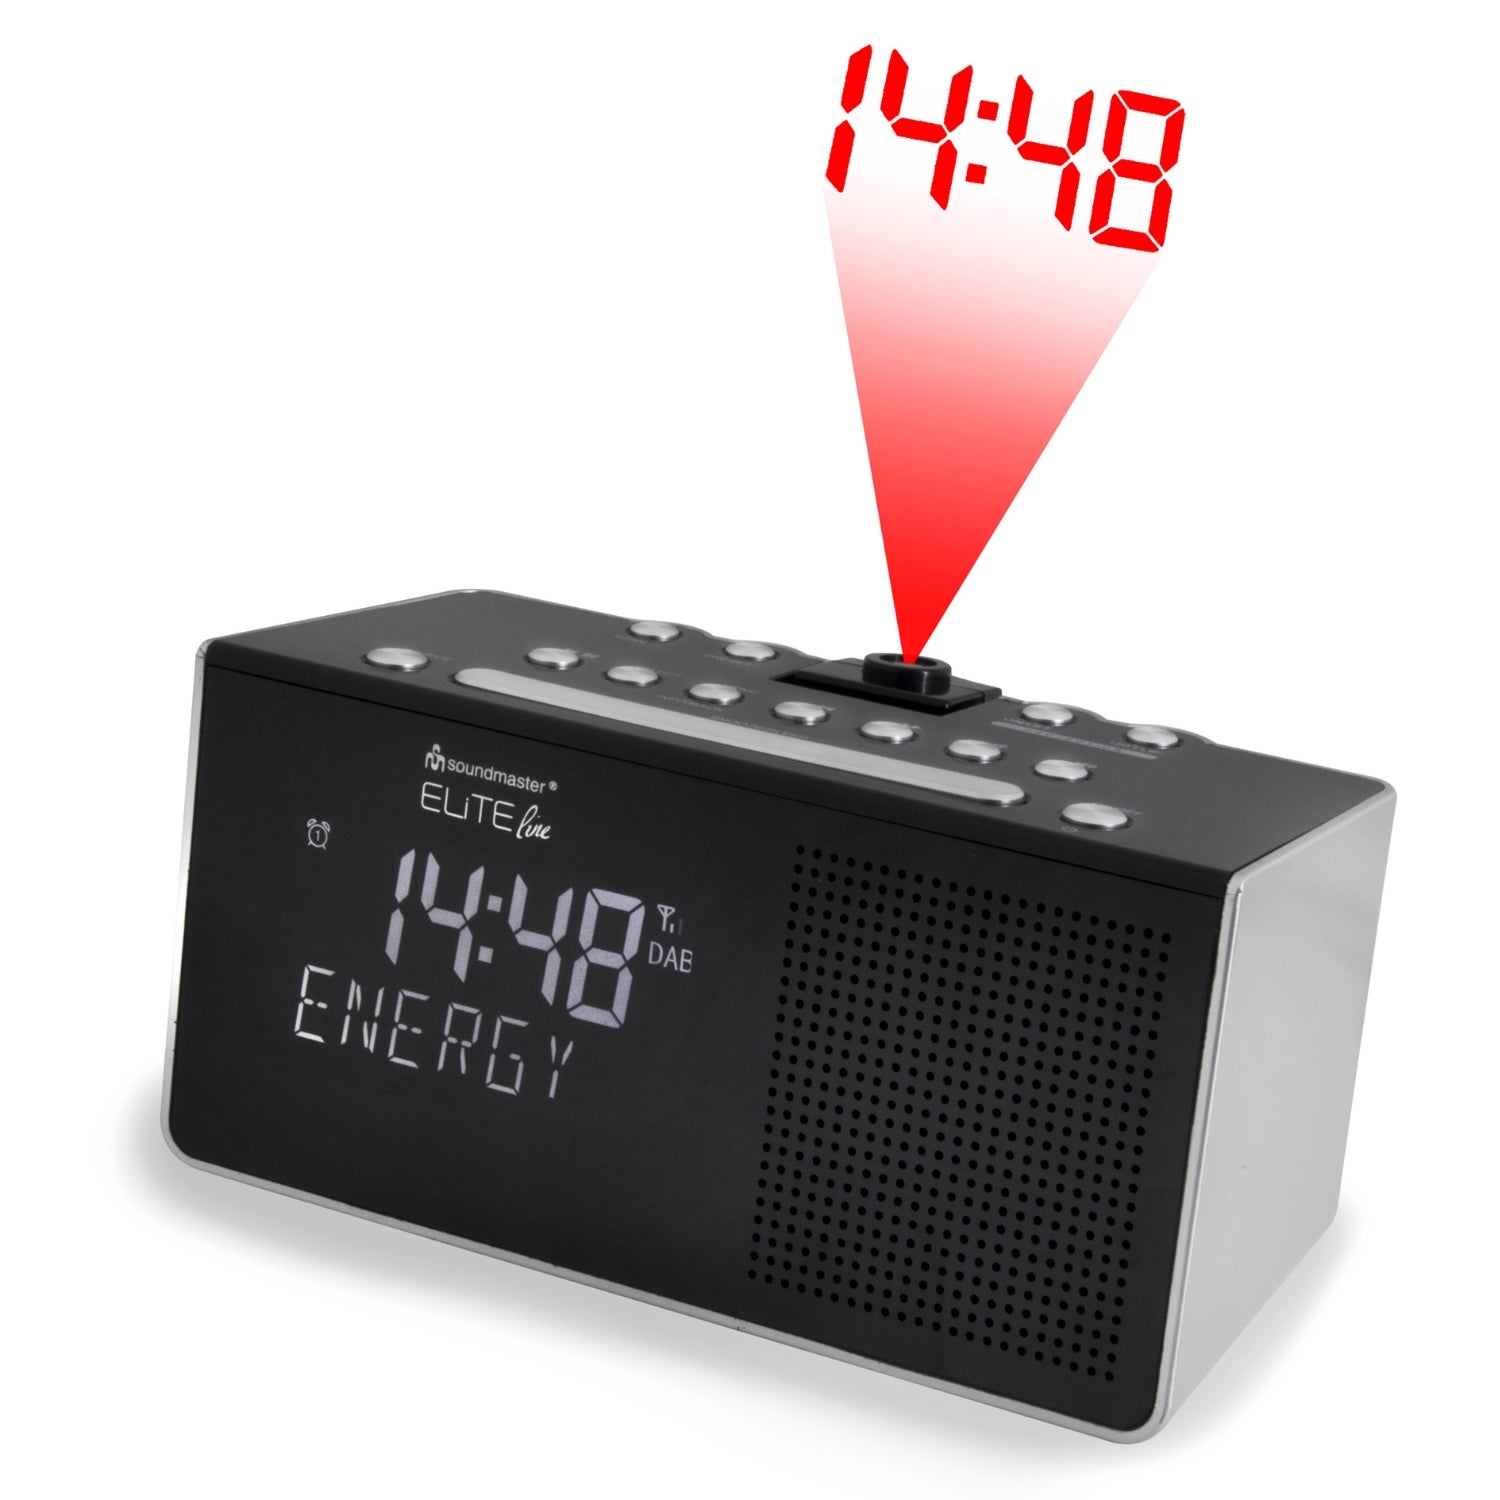 Soundmaster Eliteline UR8200SI radio-réveil réveil à projection DAB+ FM-RDS radio-réveil avec projection